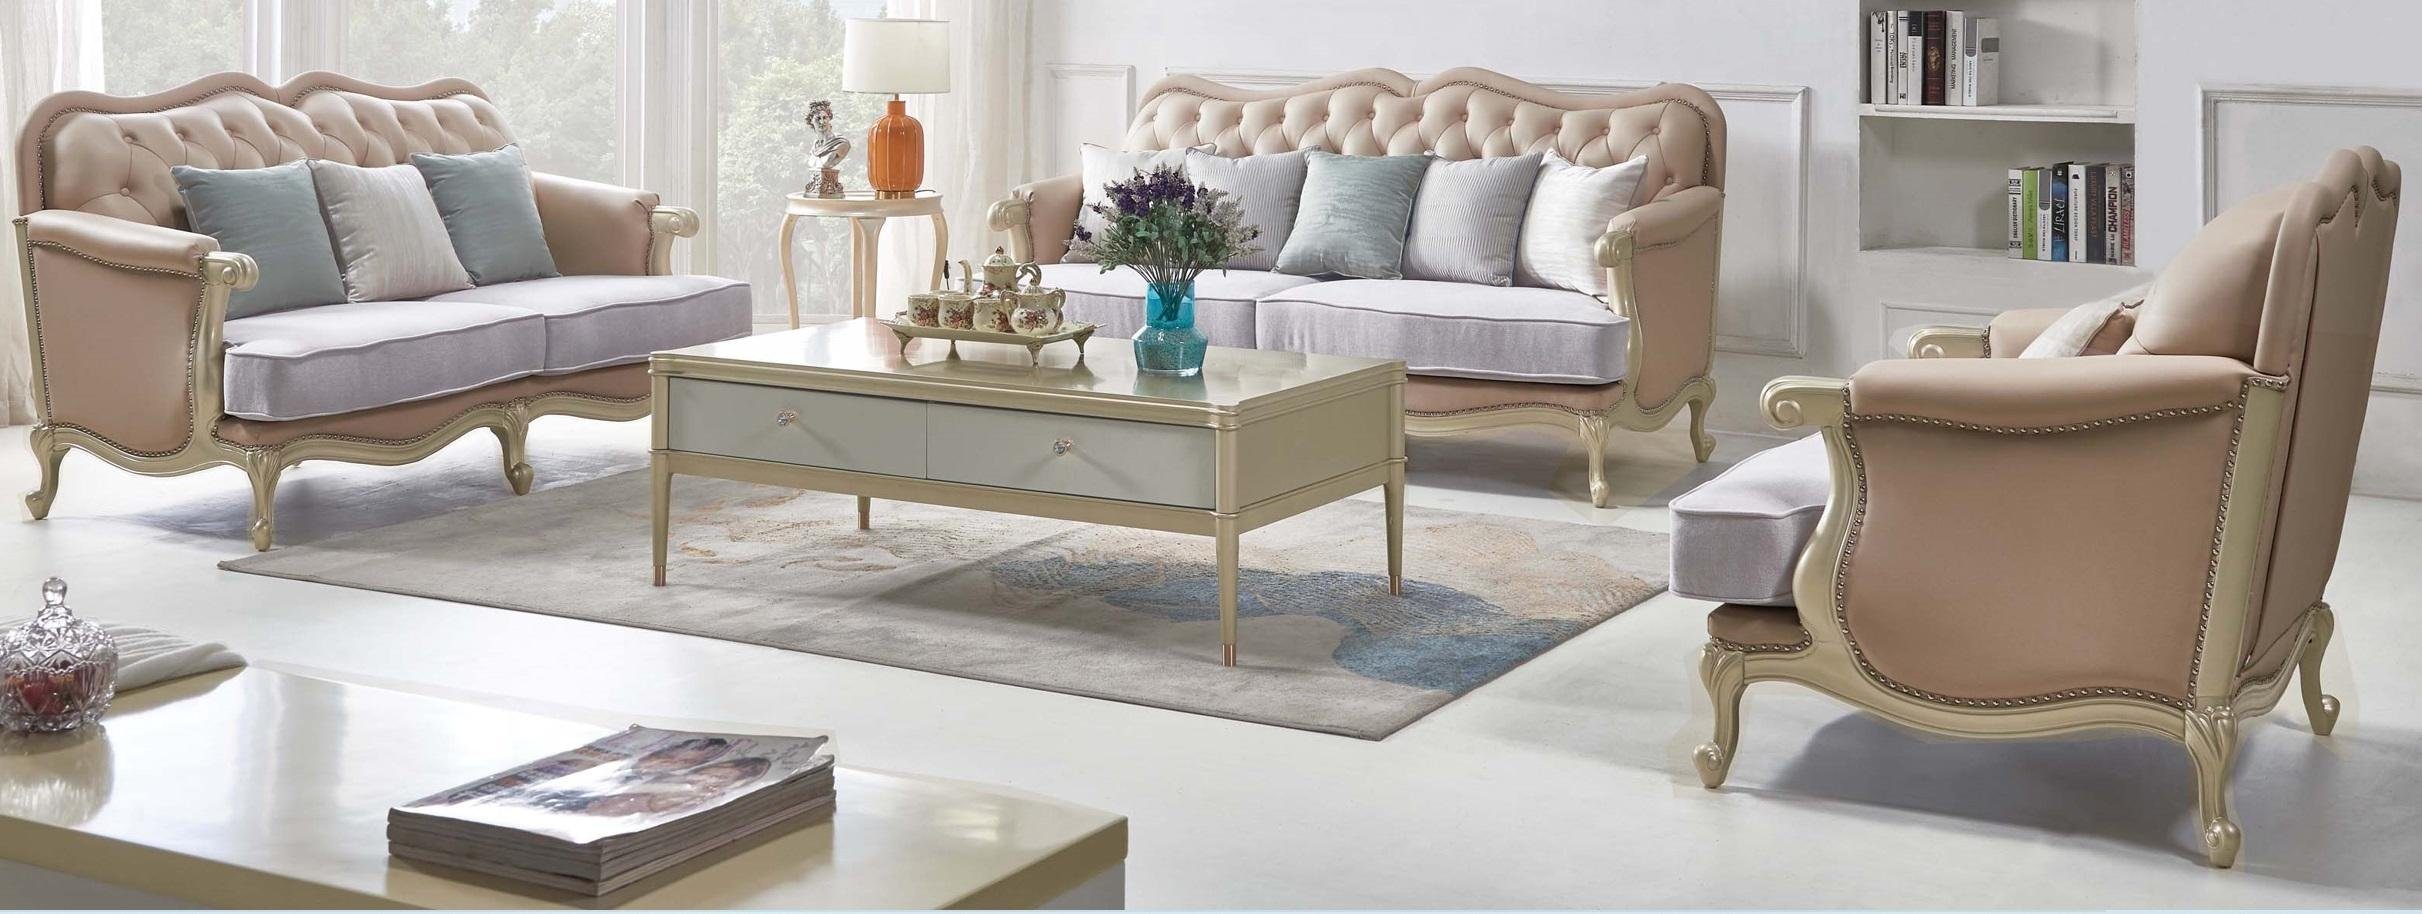 JVmoebel Couchtisch, Luxus Couchtisch Holz Tische Wohnzimmer Hochwertige Möbel